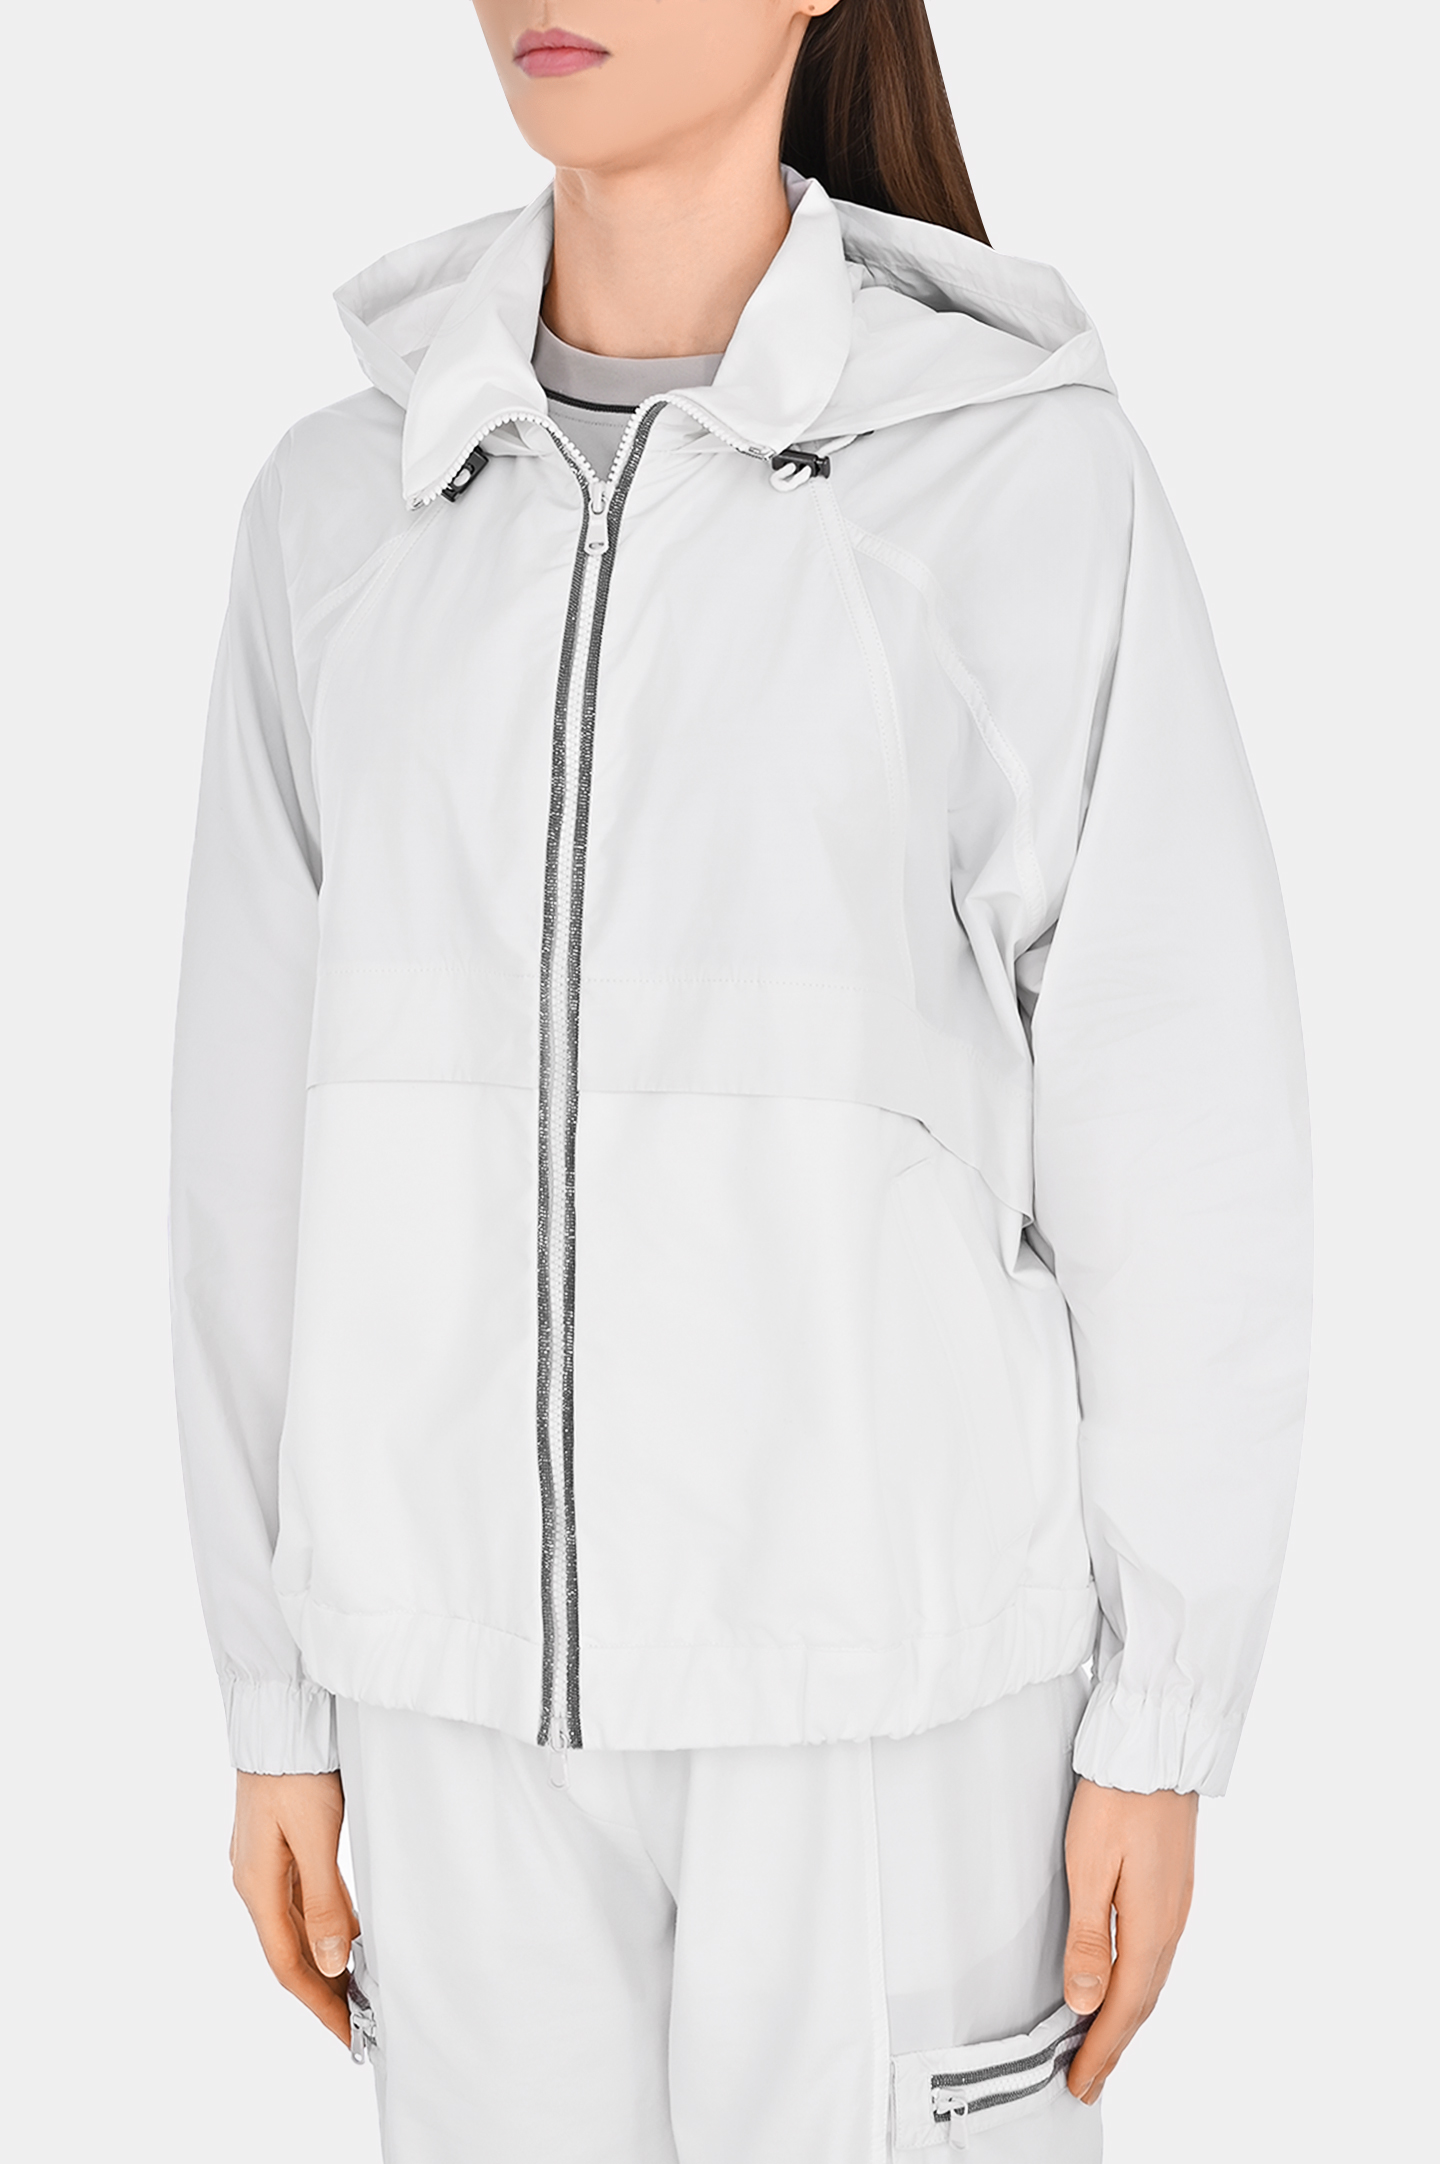 Спортивная куртка из полиэстера с капюшоном BRUNELLO  CUCINELLI MB574EP406, цвет: Белый, Женский